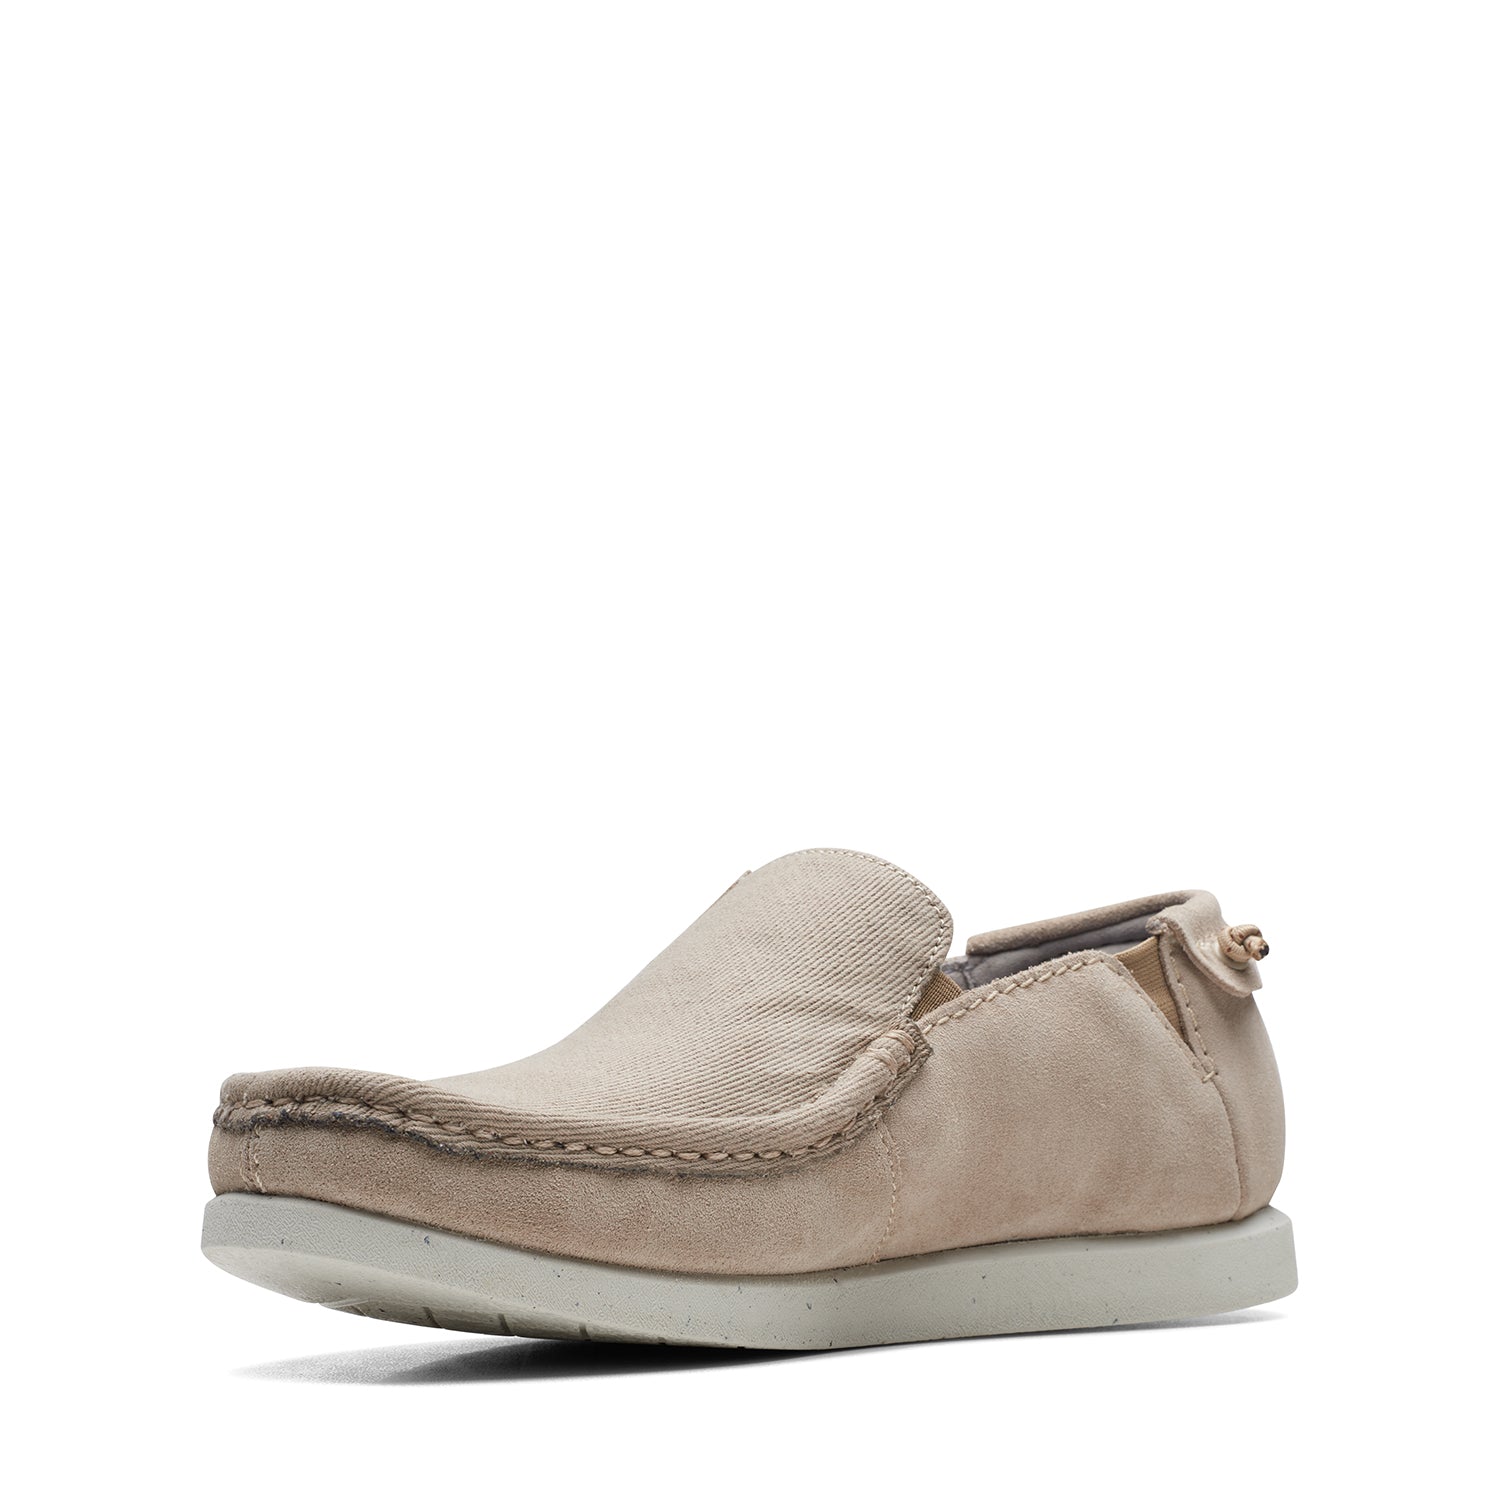 Clarks Shacrelitestep Shoes - Sand - 261718077 - G Width (Standard Fit)